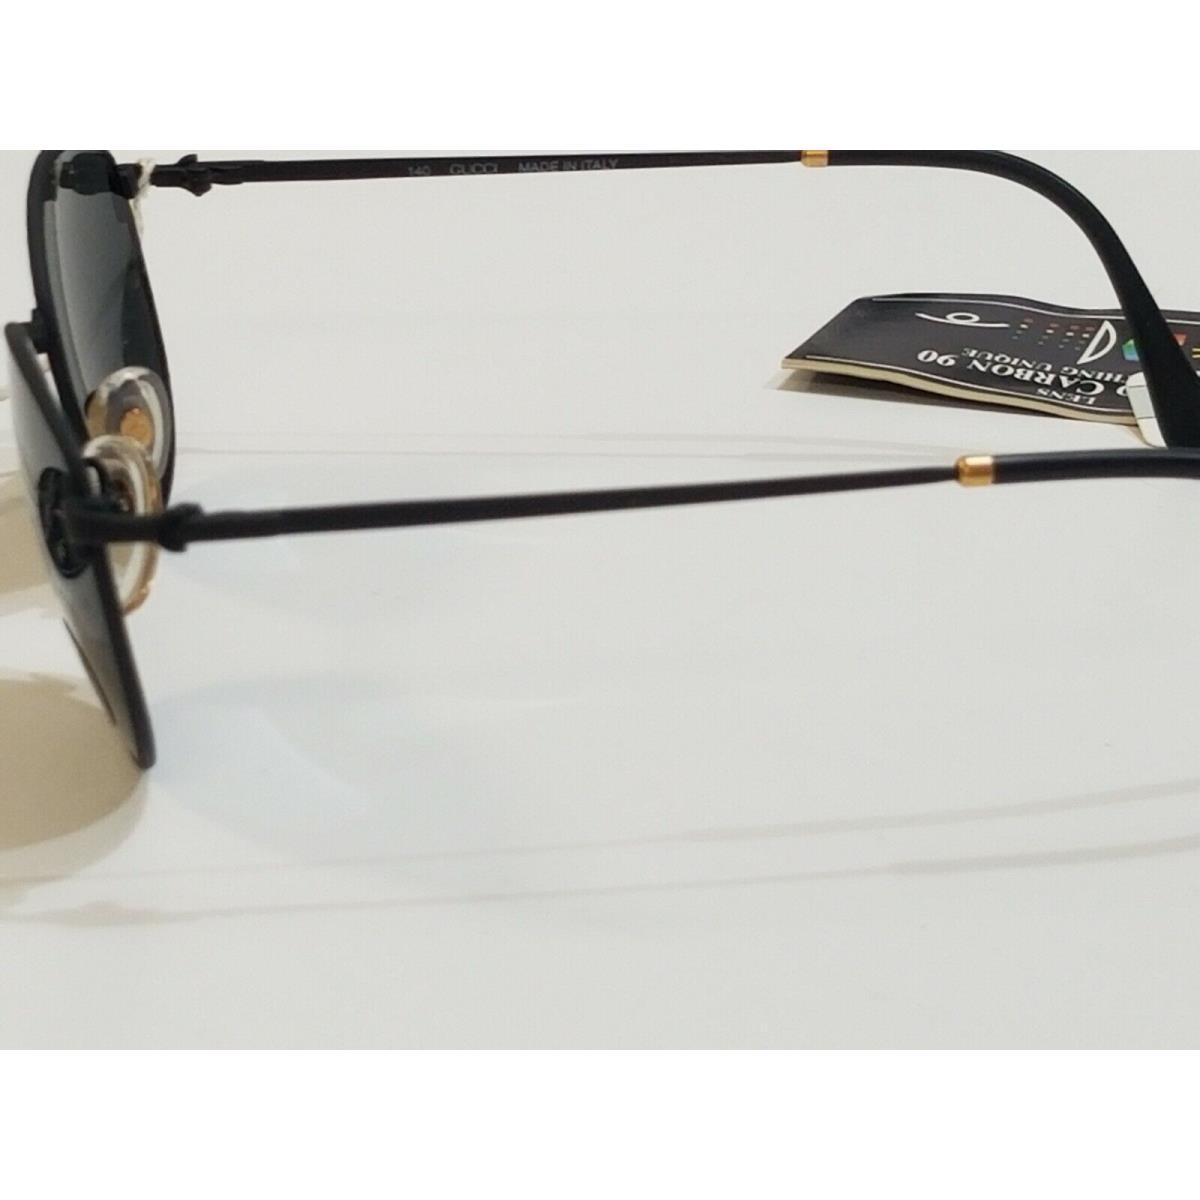 Gucci eyeglasses  - Black Frame